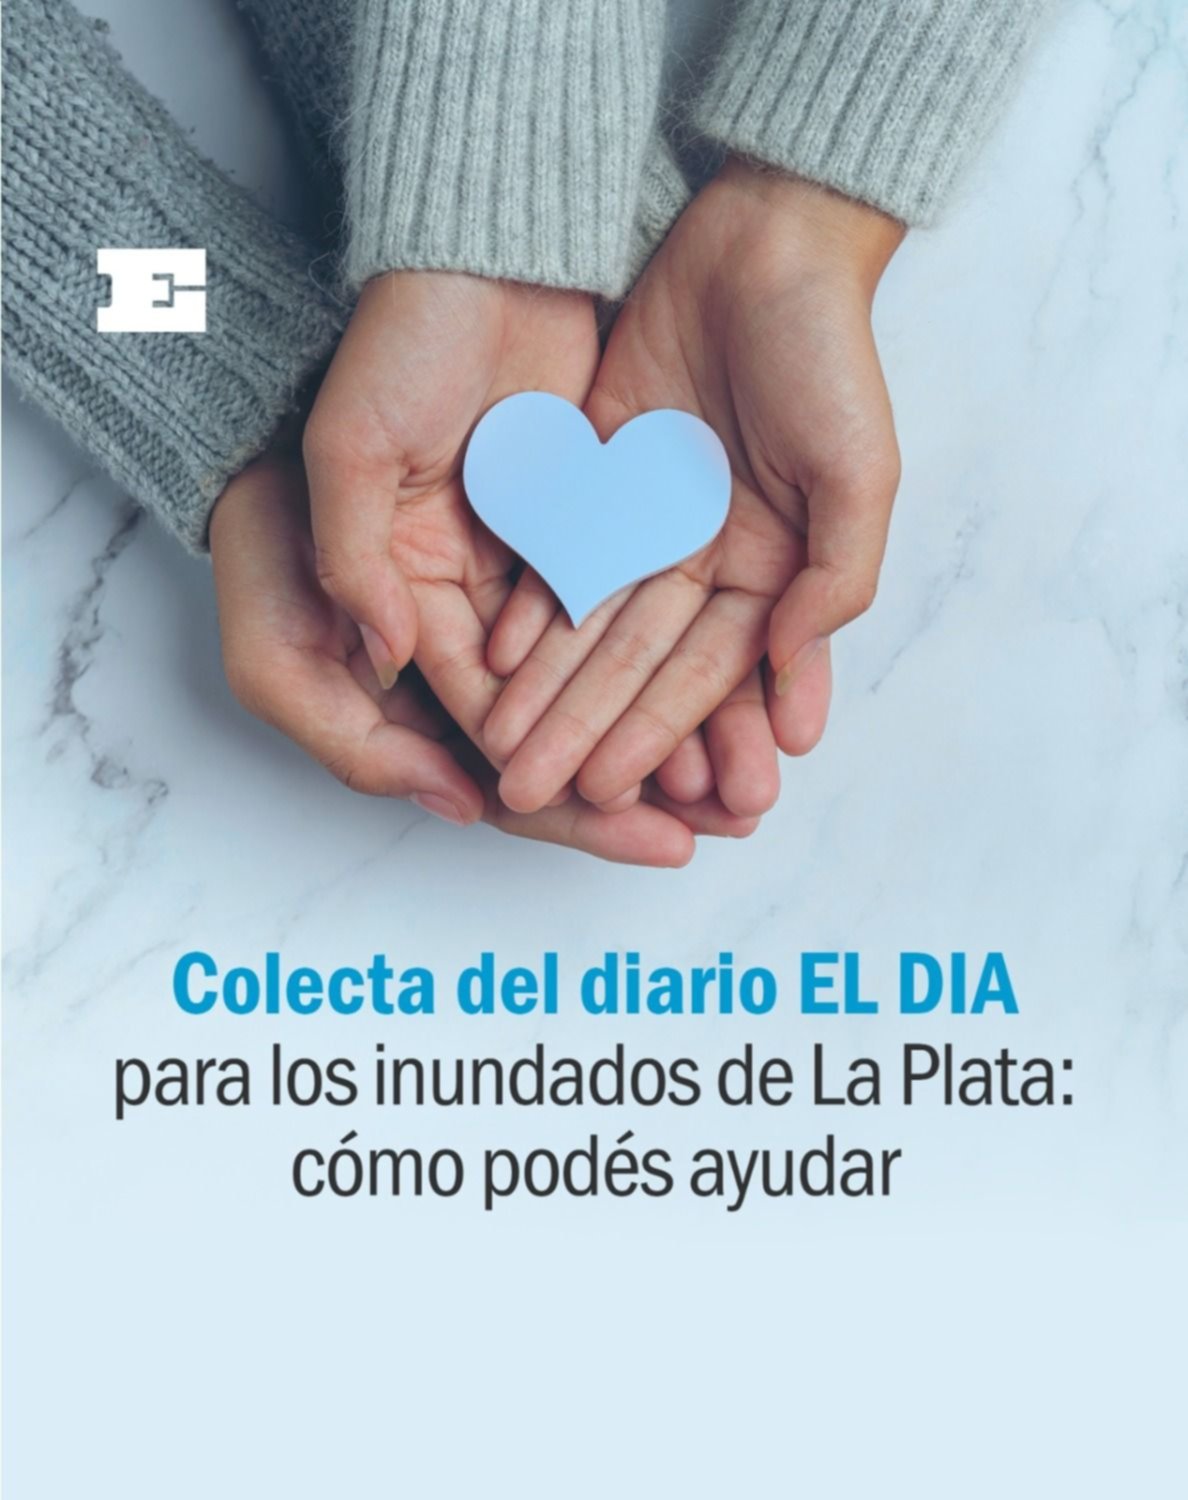 Colecta del diario EL DIA para los inundados de La Plata: cómo podés ayudar